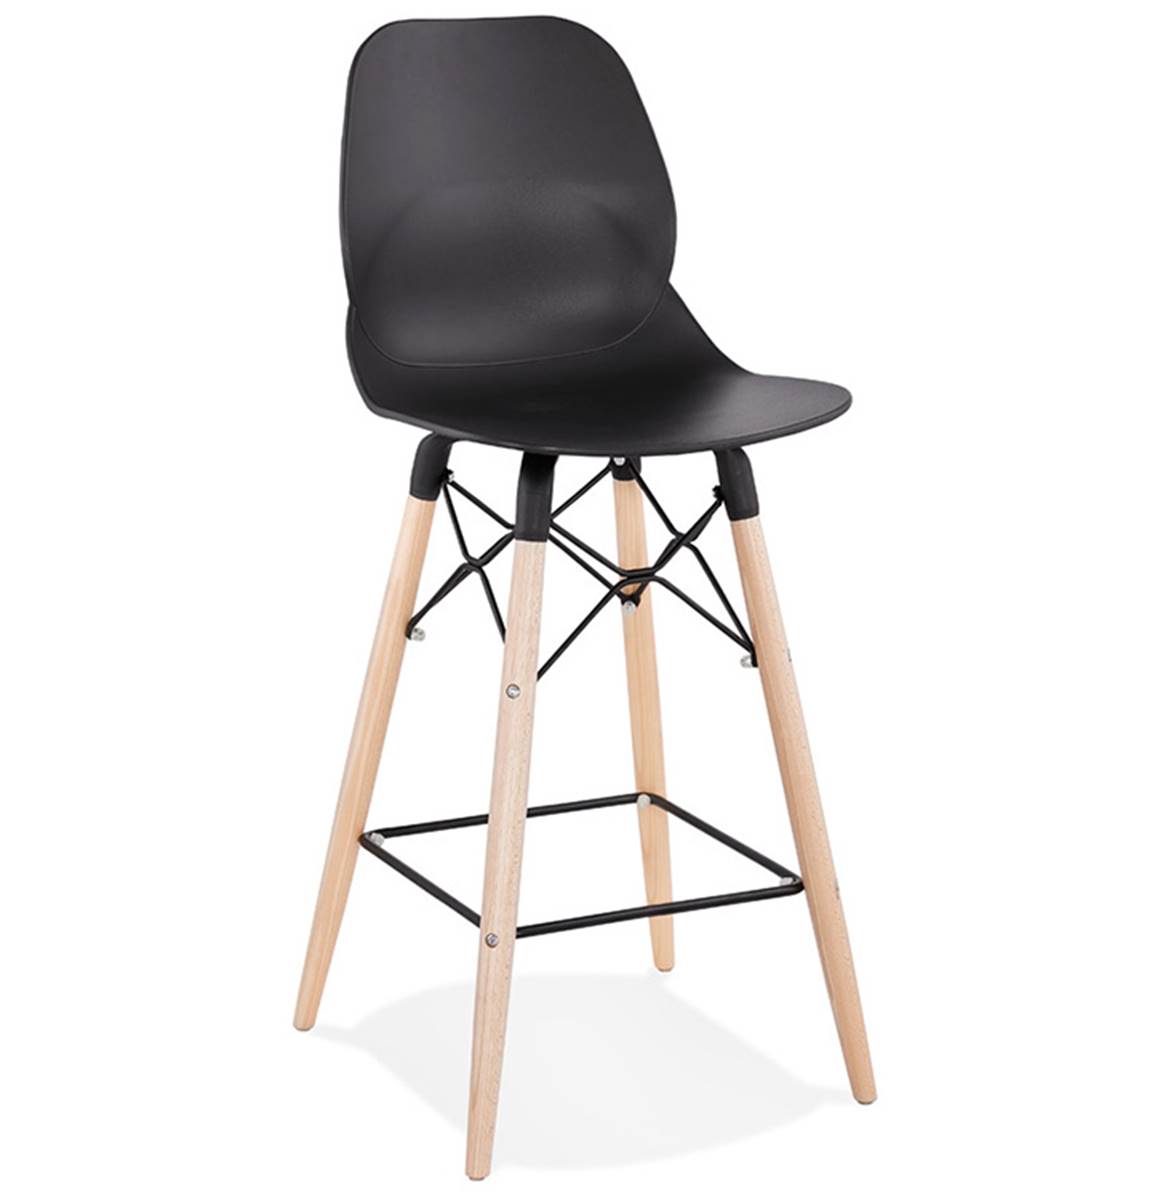 Chaise design - 4 pieds bois - Rotatifs à 360° - Livraison sur la